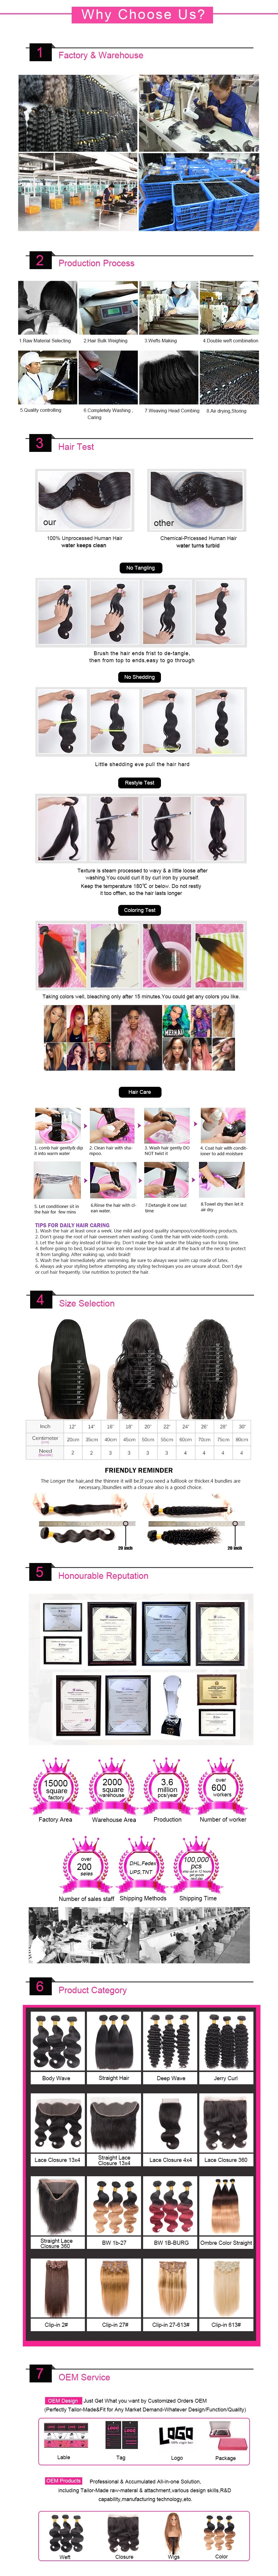 Brazilian Virgin Hair Loose Wave Hair Weave 4 Bundles 400g Unprocessed Loose Deep Wave